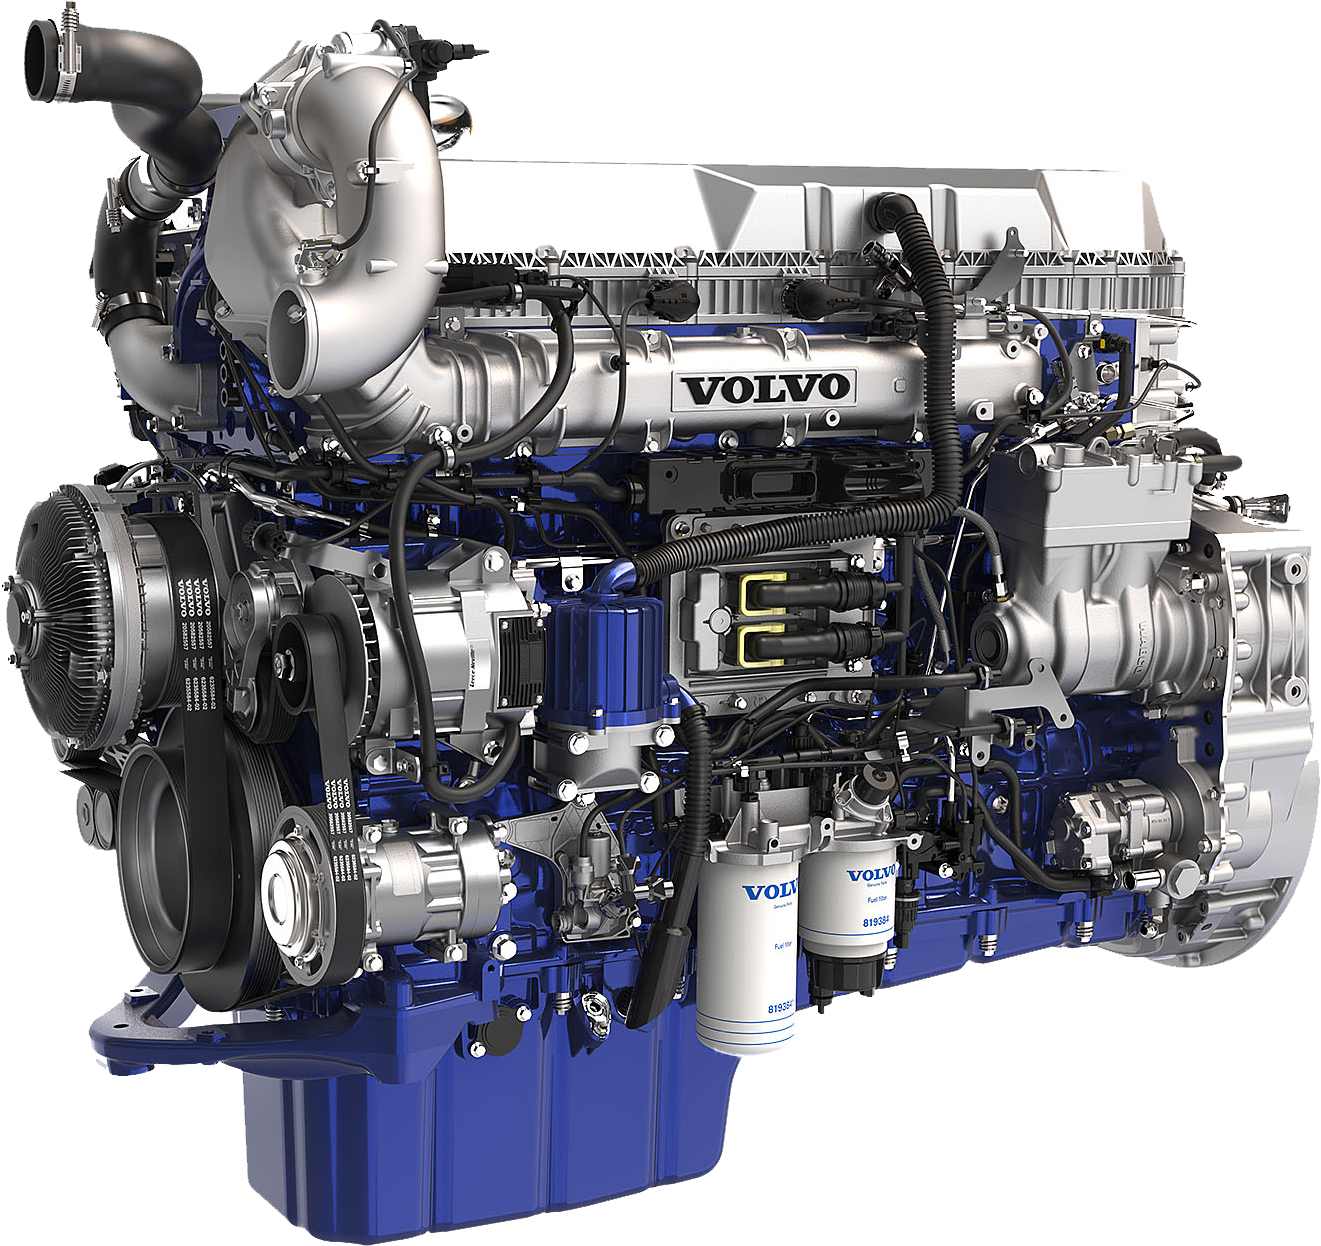 Volvo d13 engine. D13 Volvo Power. Мотор Volvo FH d13. Двигатели Вольво Truck. Лучшие дизельные моторы